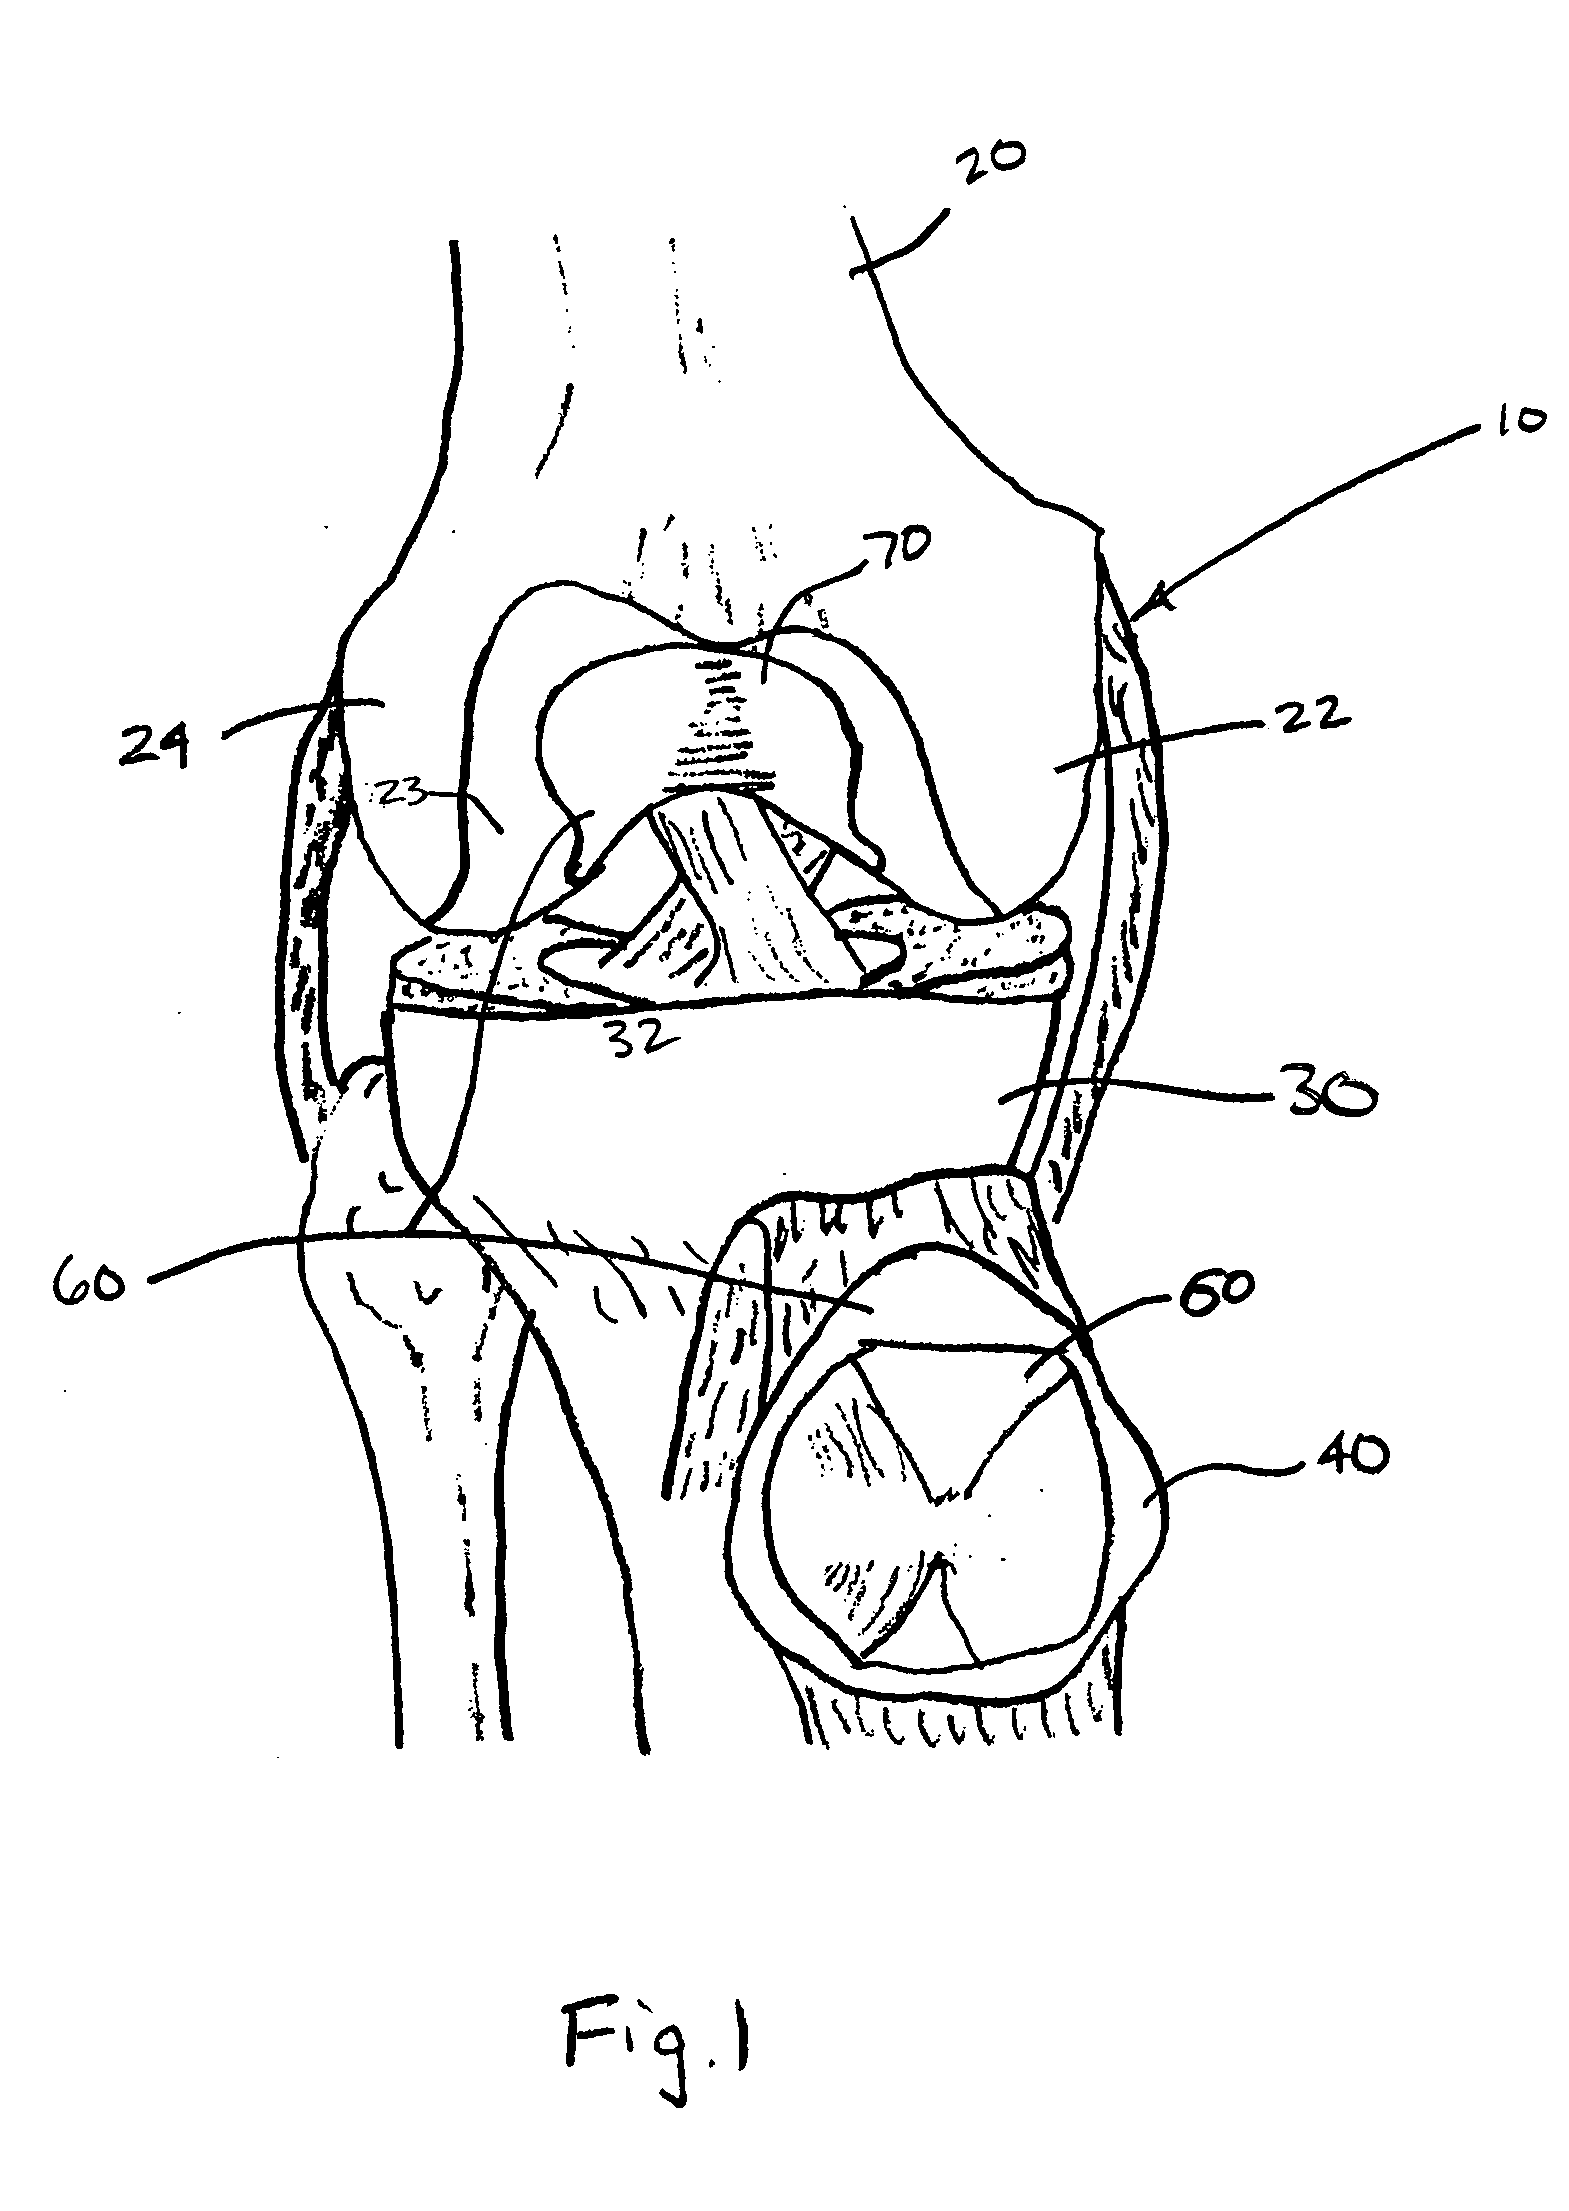 Patello-femoral prosthesis